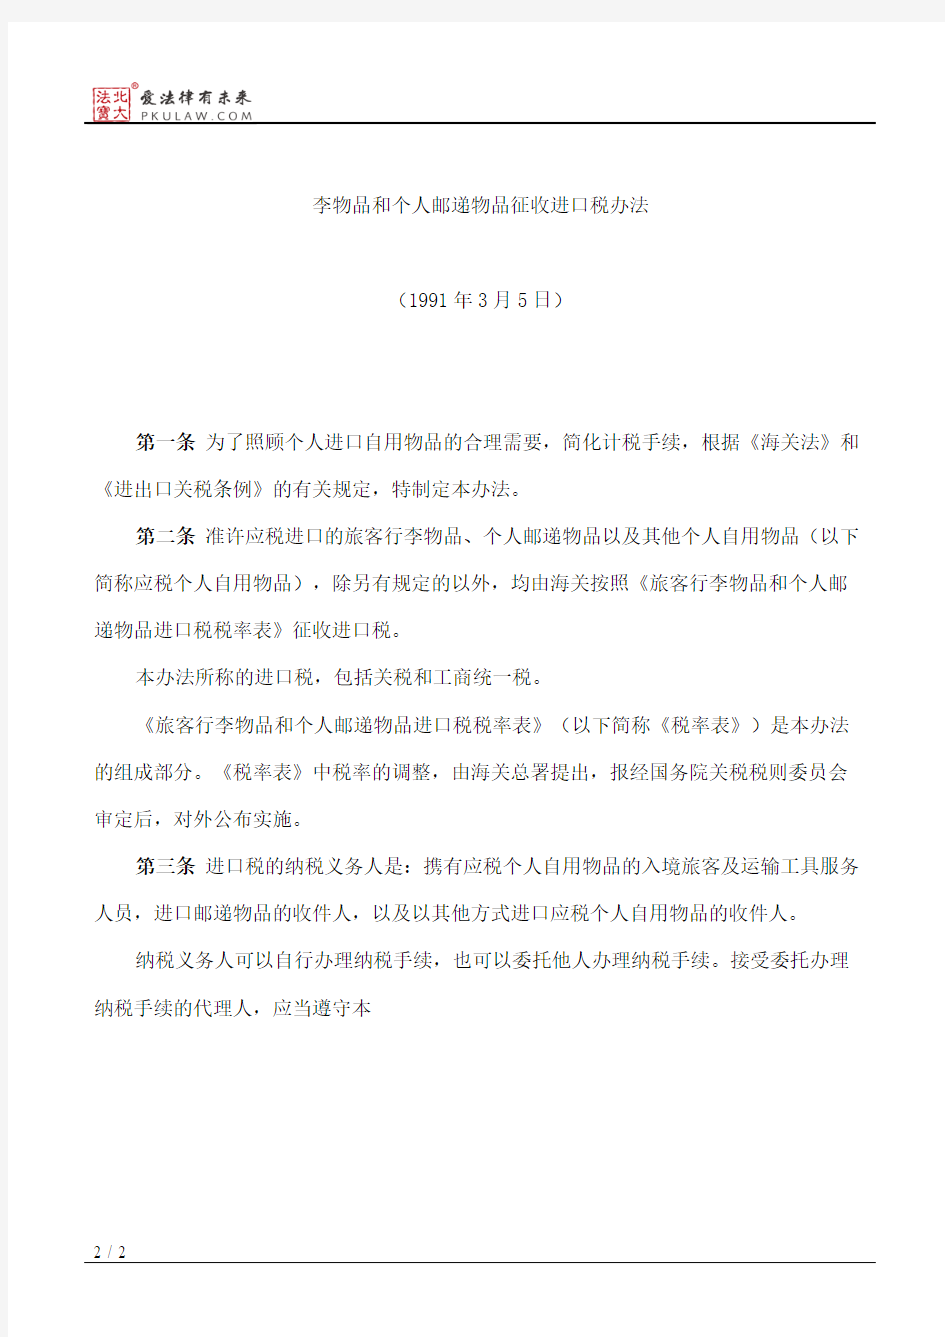 中华人民共和国海关关于入境旅客行李物品和个人邮递物品征收进口税办法